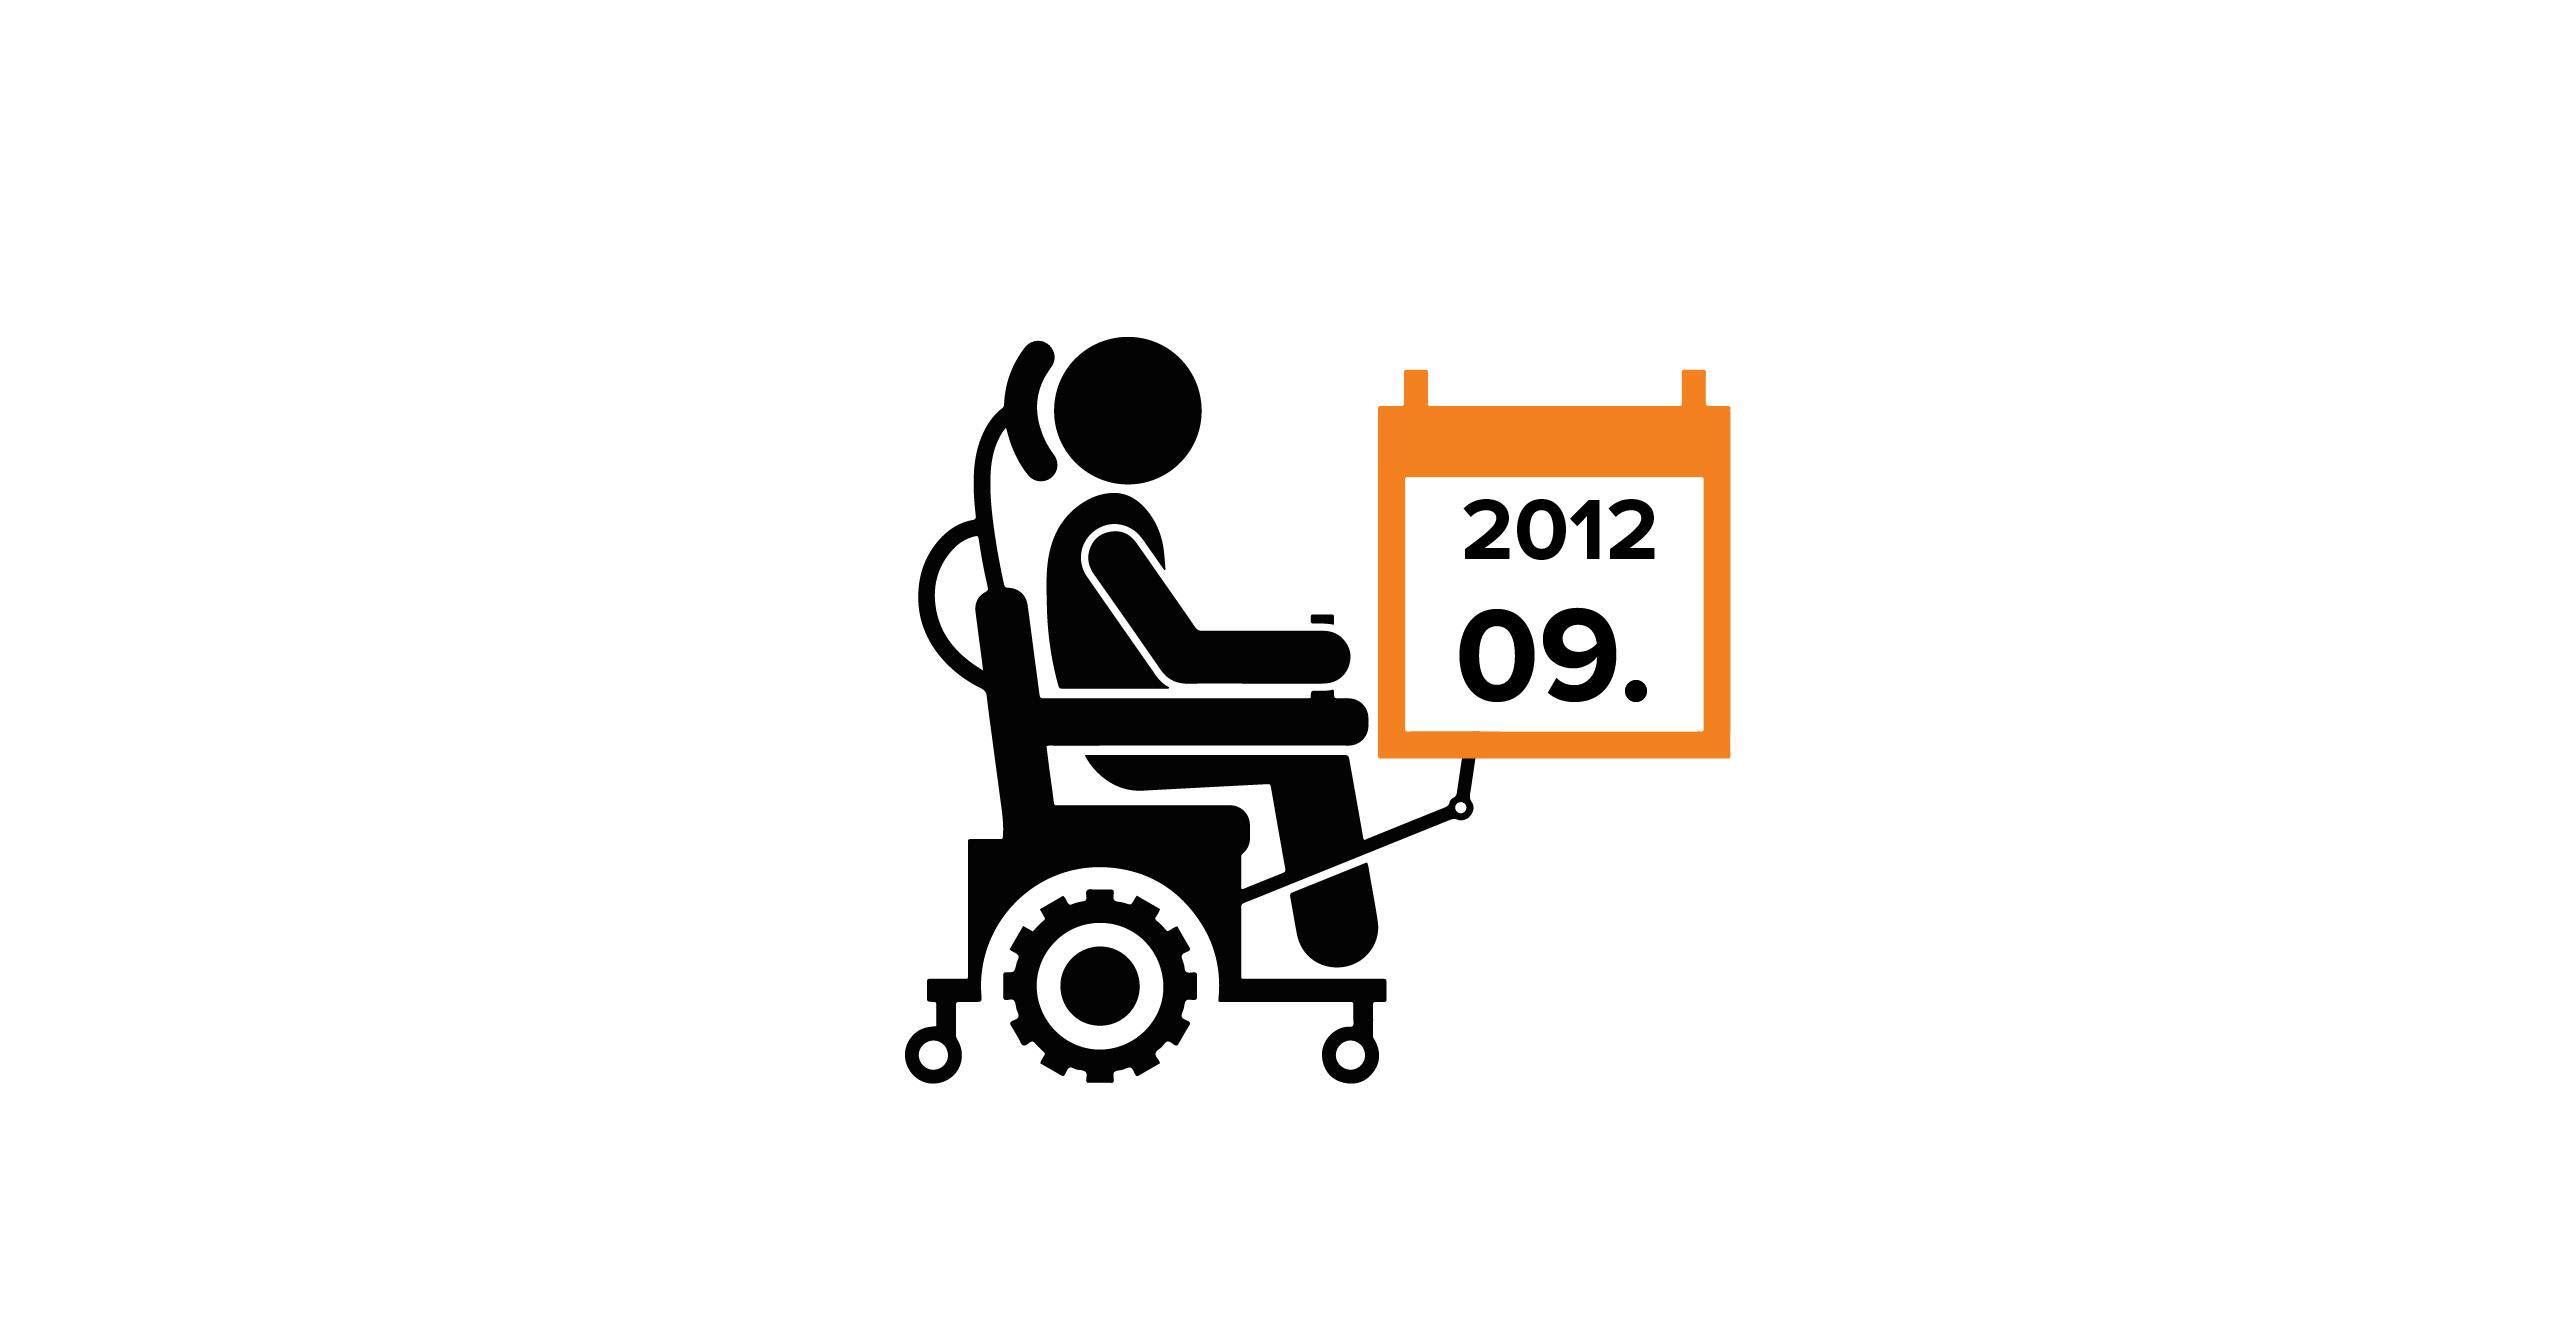 Na grafice człowiek na wózku, trzymający kalendarz z datą 09.2012